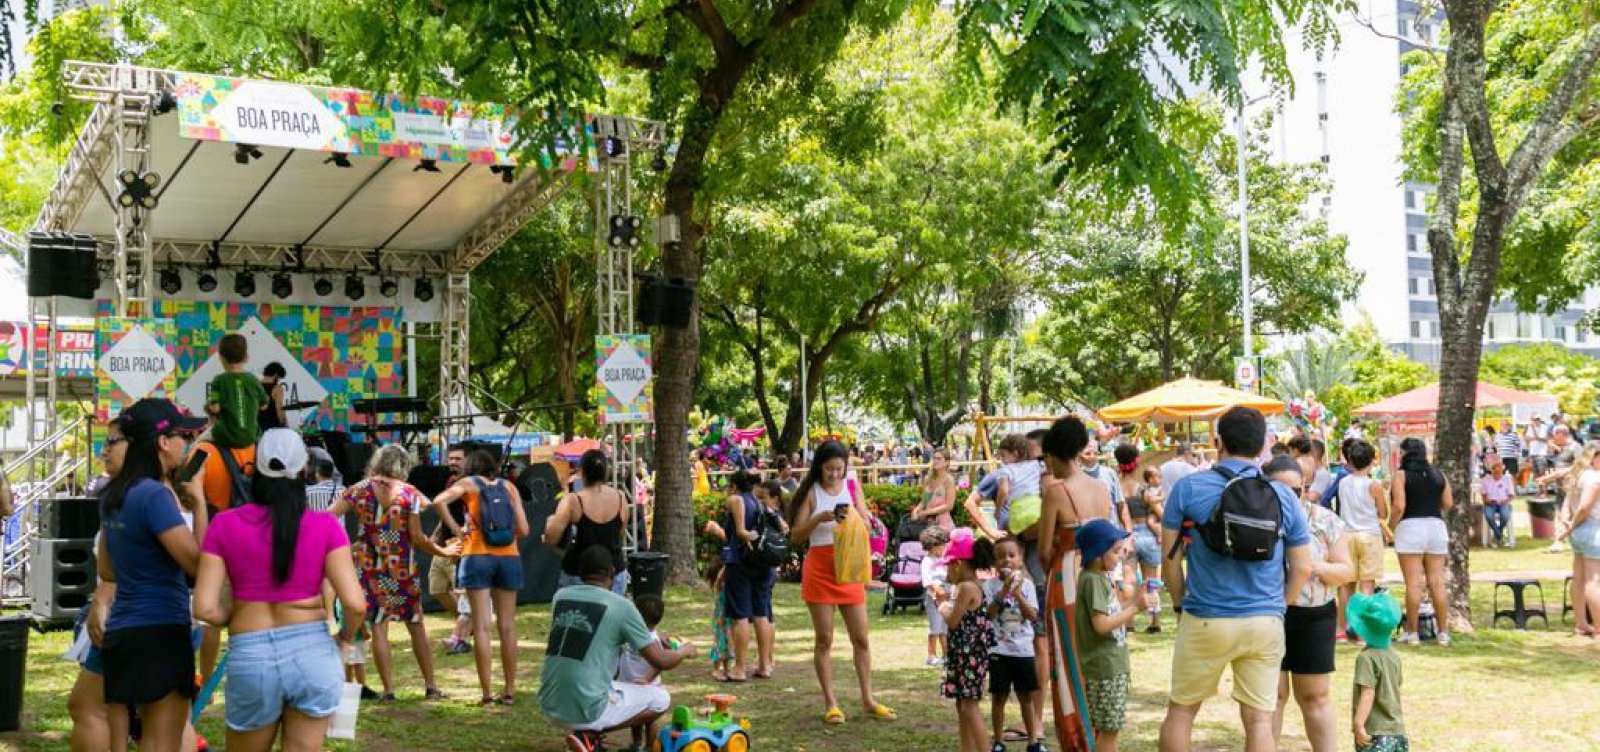 Boa Praça se consolida como experiência gastronômica e de lazer para toda a família em Salvador